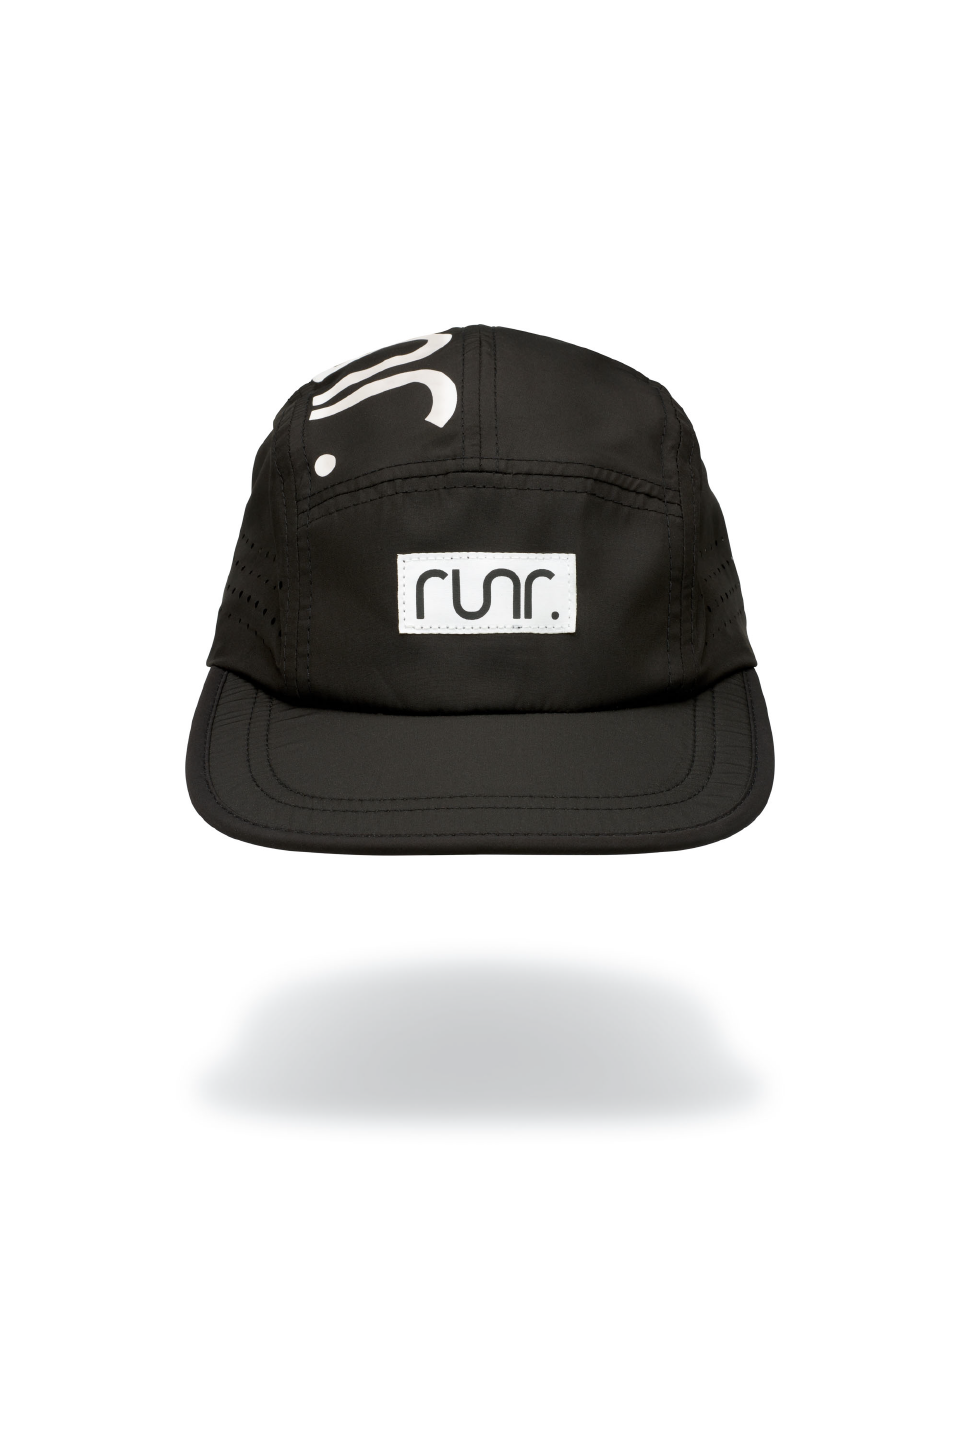 Runr Berlin Technical Running Hat